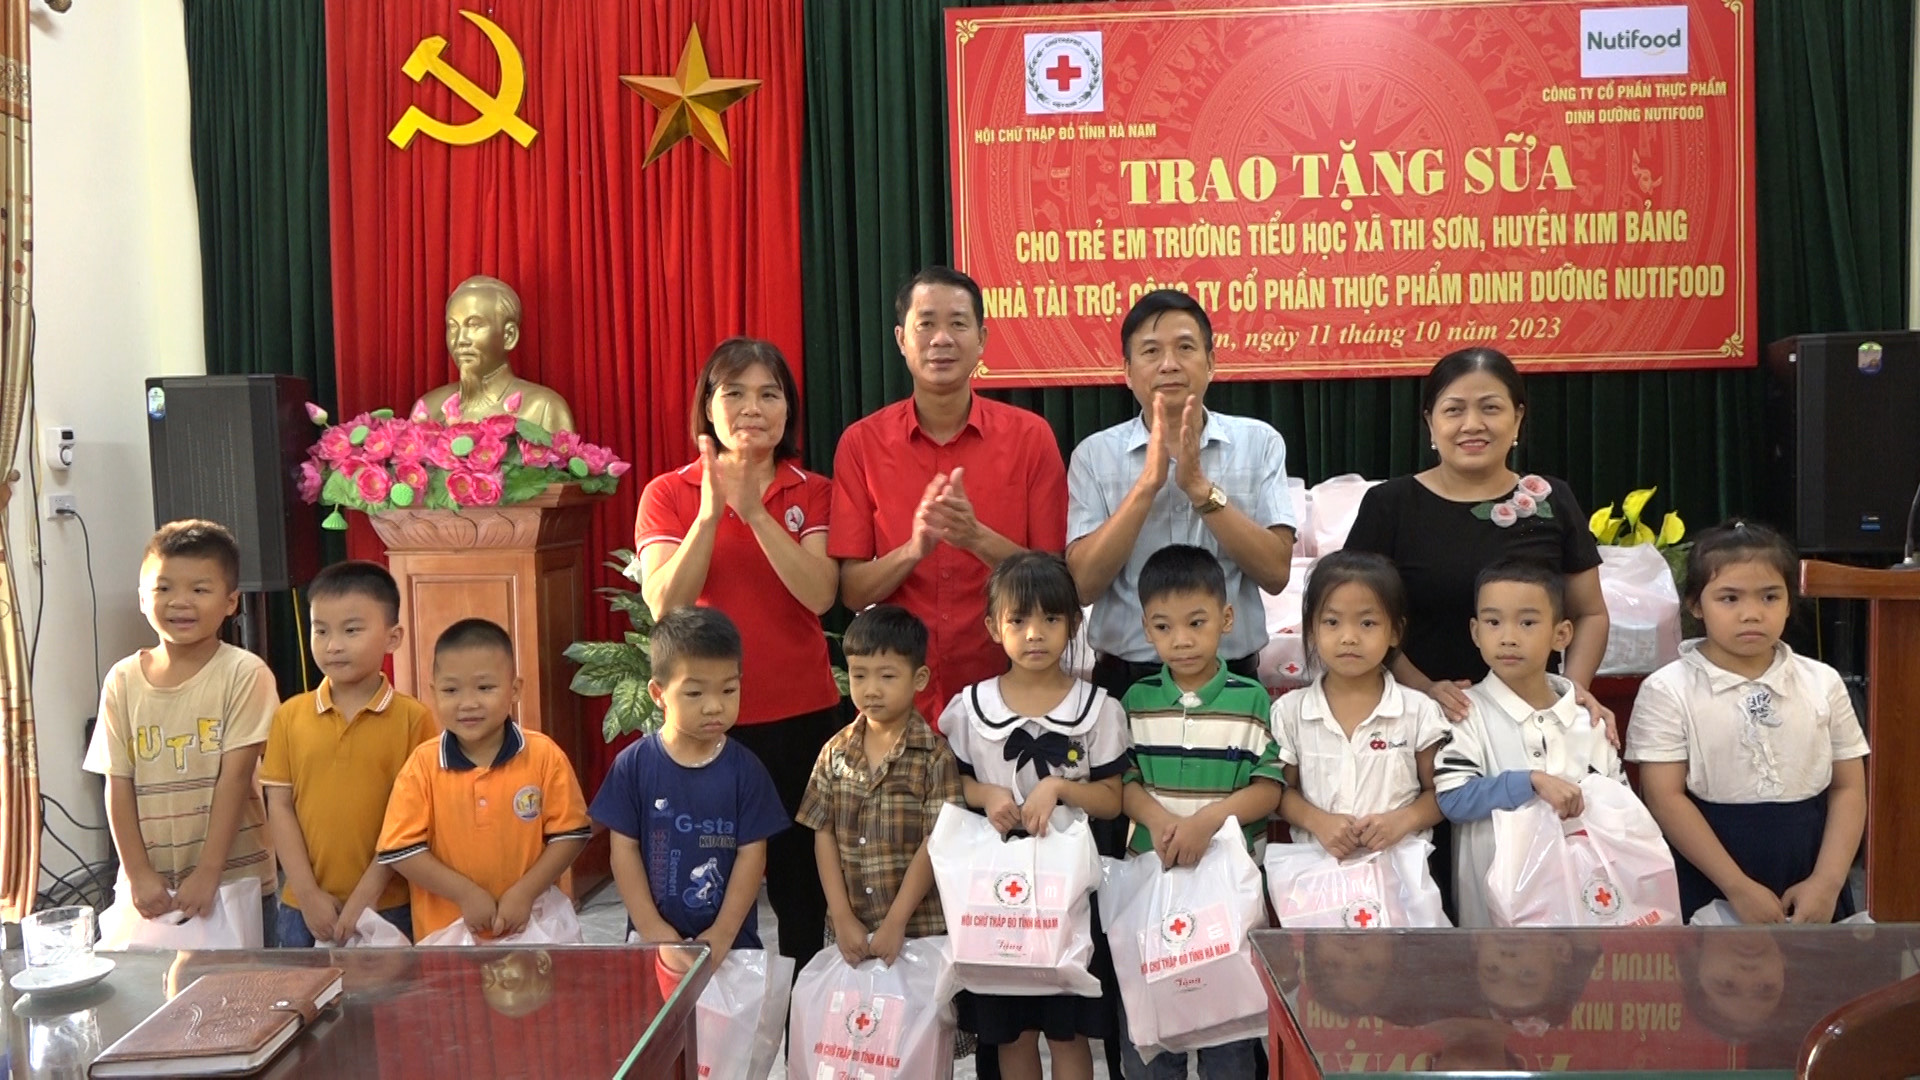 Đại diện Hội Chữ thập đỏ các cấp trao tặng sữa cho các học sinh thuộc hộ nghèo, hộ khó khăn trường tiểu học xã Thi Sơn.jpeg